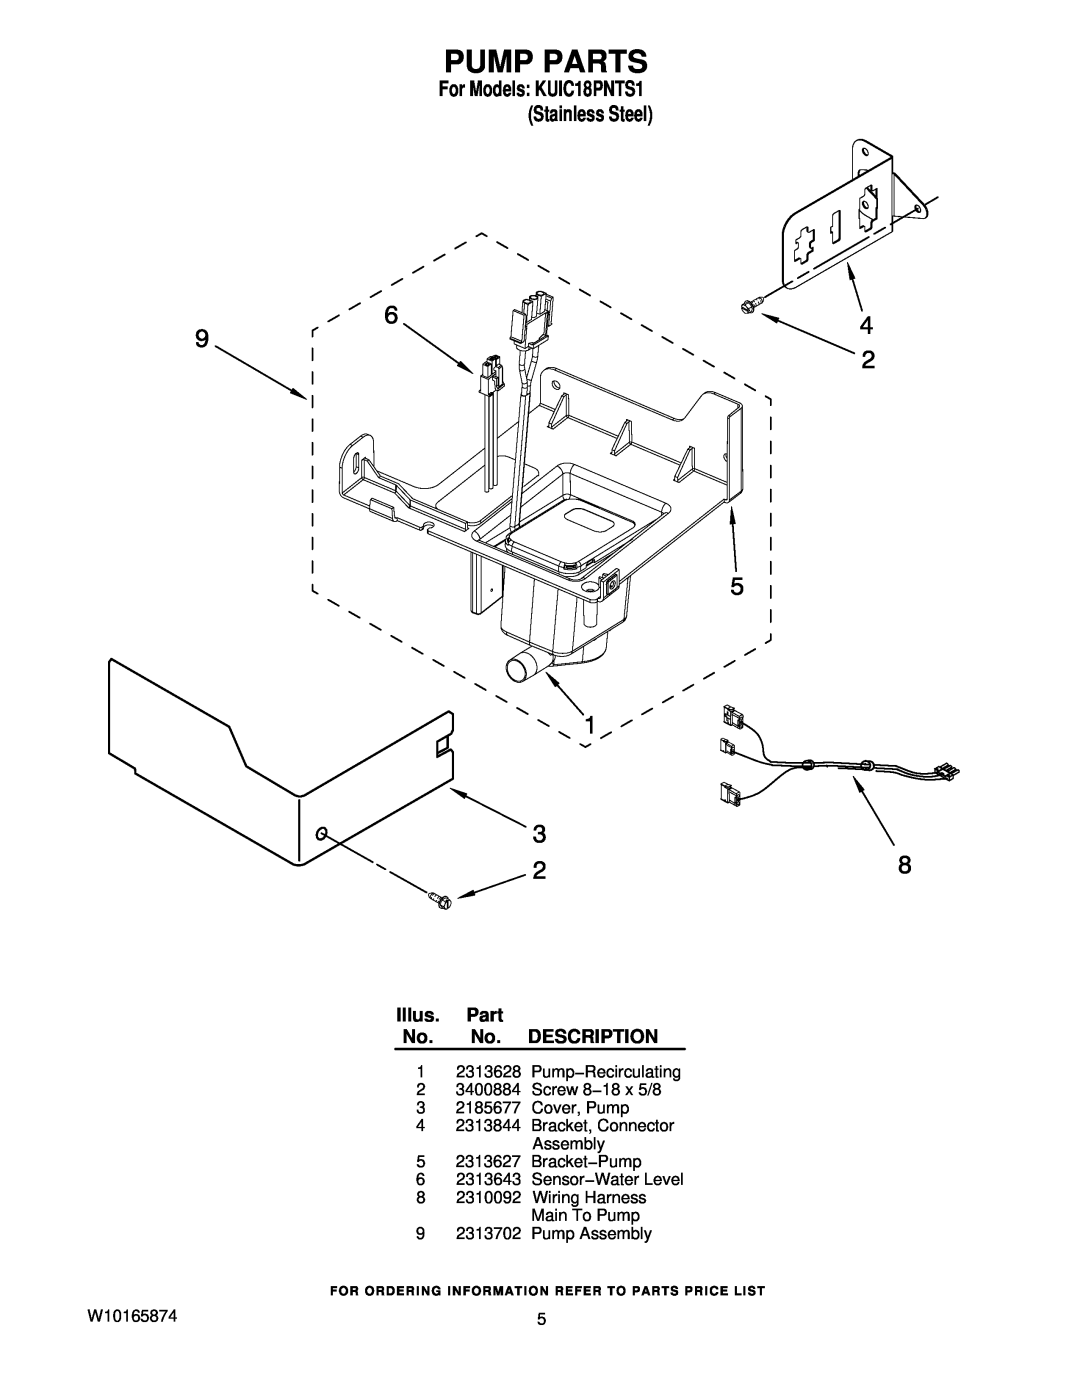 KitchenAid manual Pump Parts, Illus. Part No. No. DESCRIPTION, For Models KUIC18PNTS1 Stainless Steel 